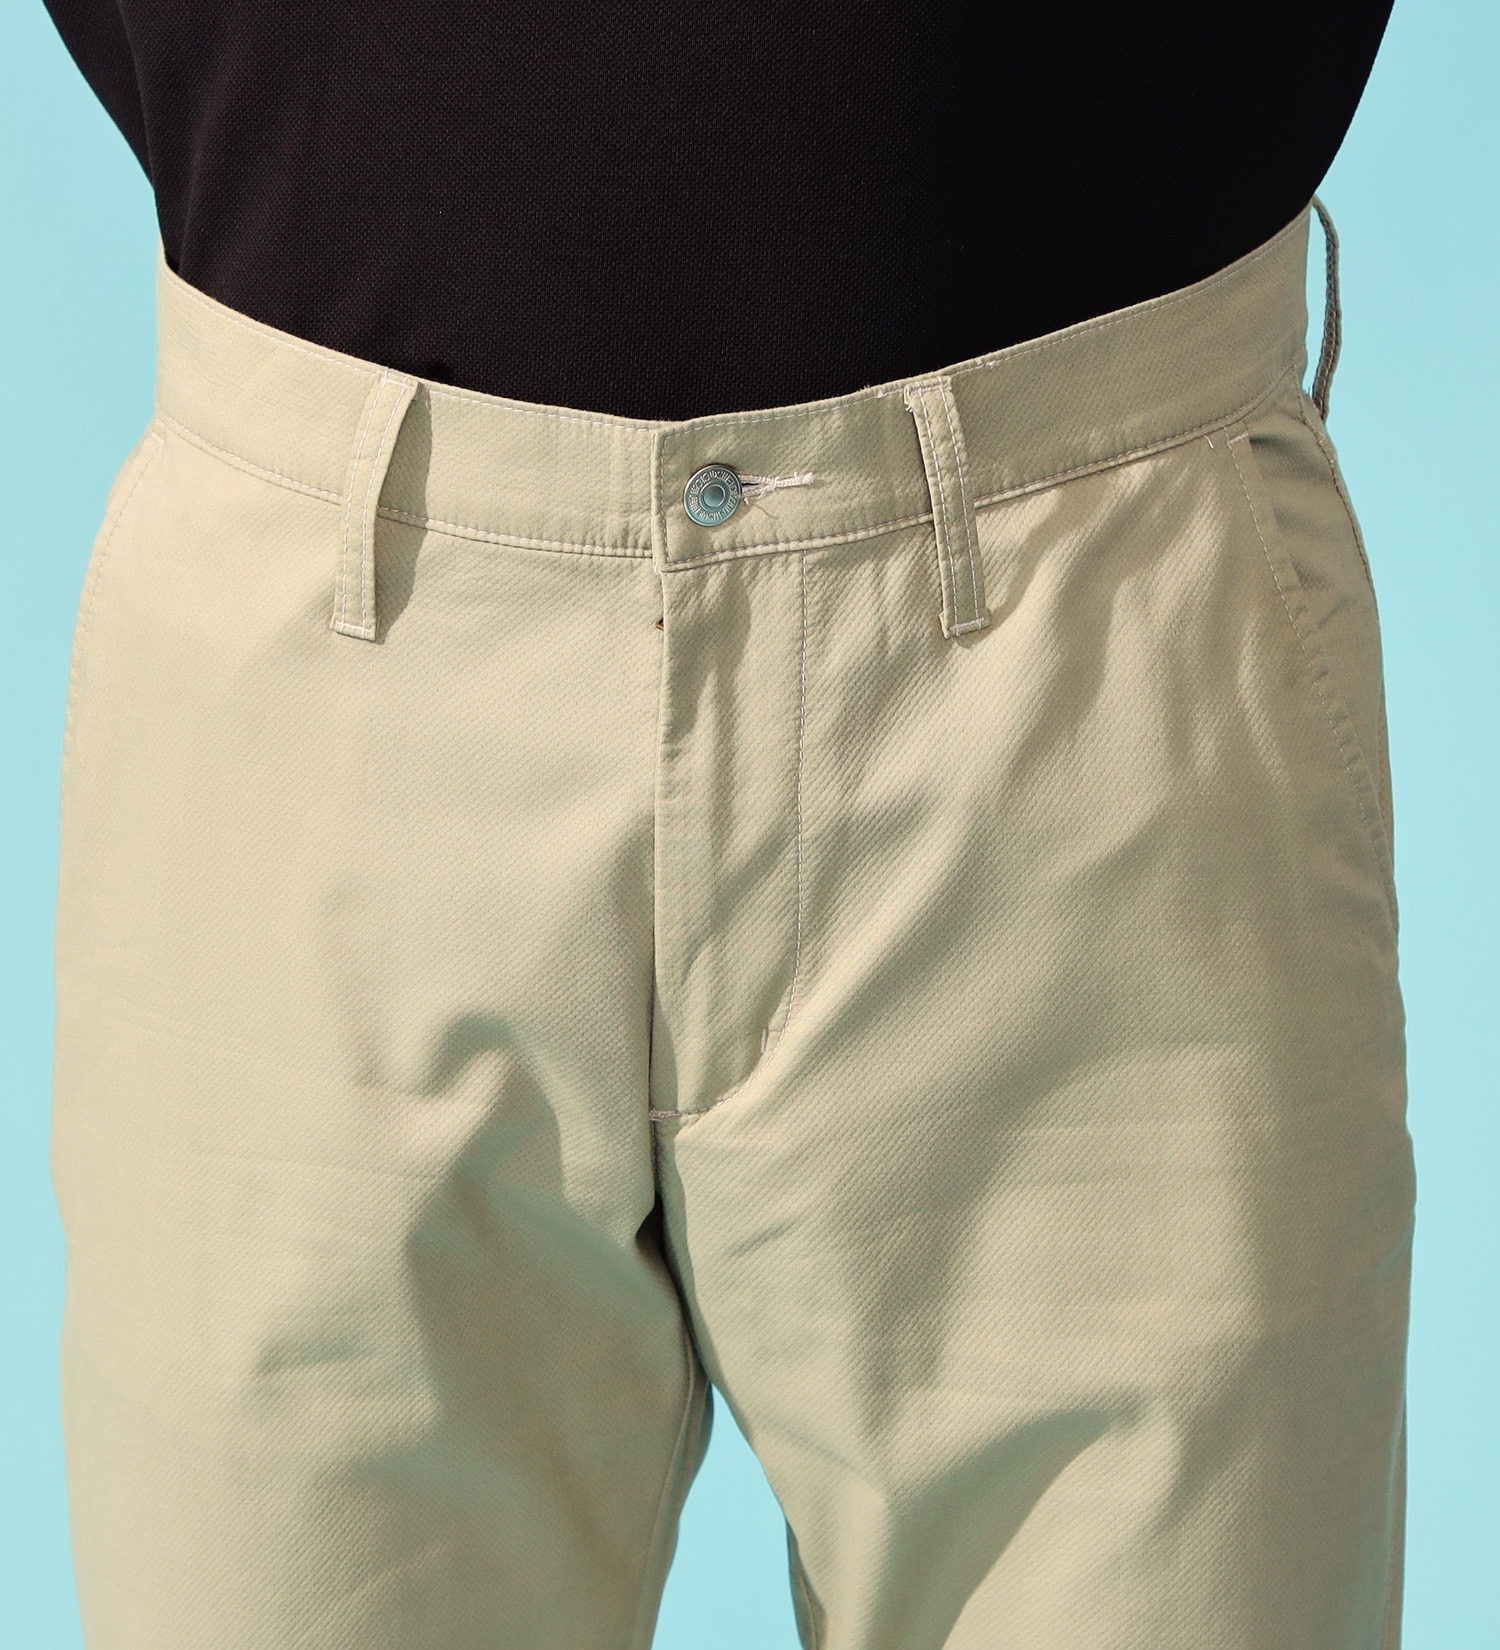 EDWIN(エドウイン)の【GW SALE】【涼】インターナショナルベーシック レギュラーストレートパンツ COOLFLEX 裏メッシュ素材 最軽量 スラッシュポケット|パンツ/パンツ/メンズ|ベージュ